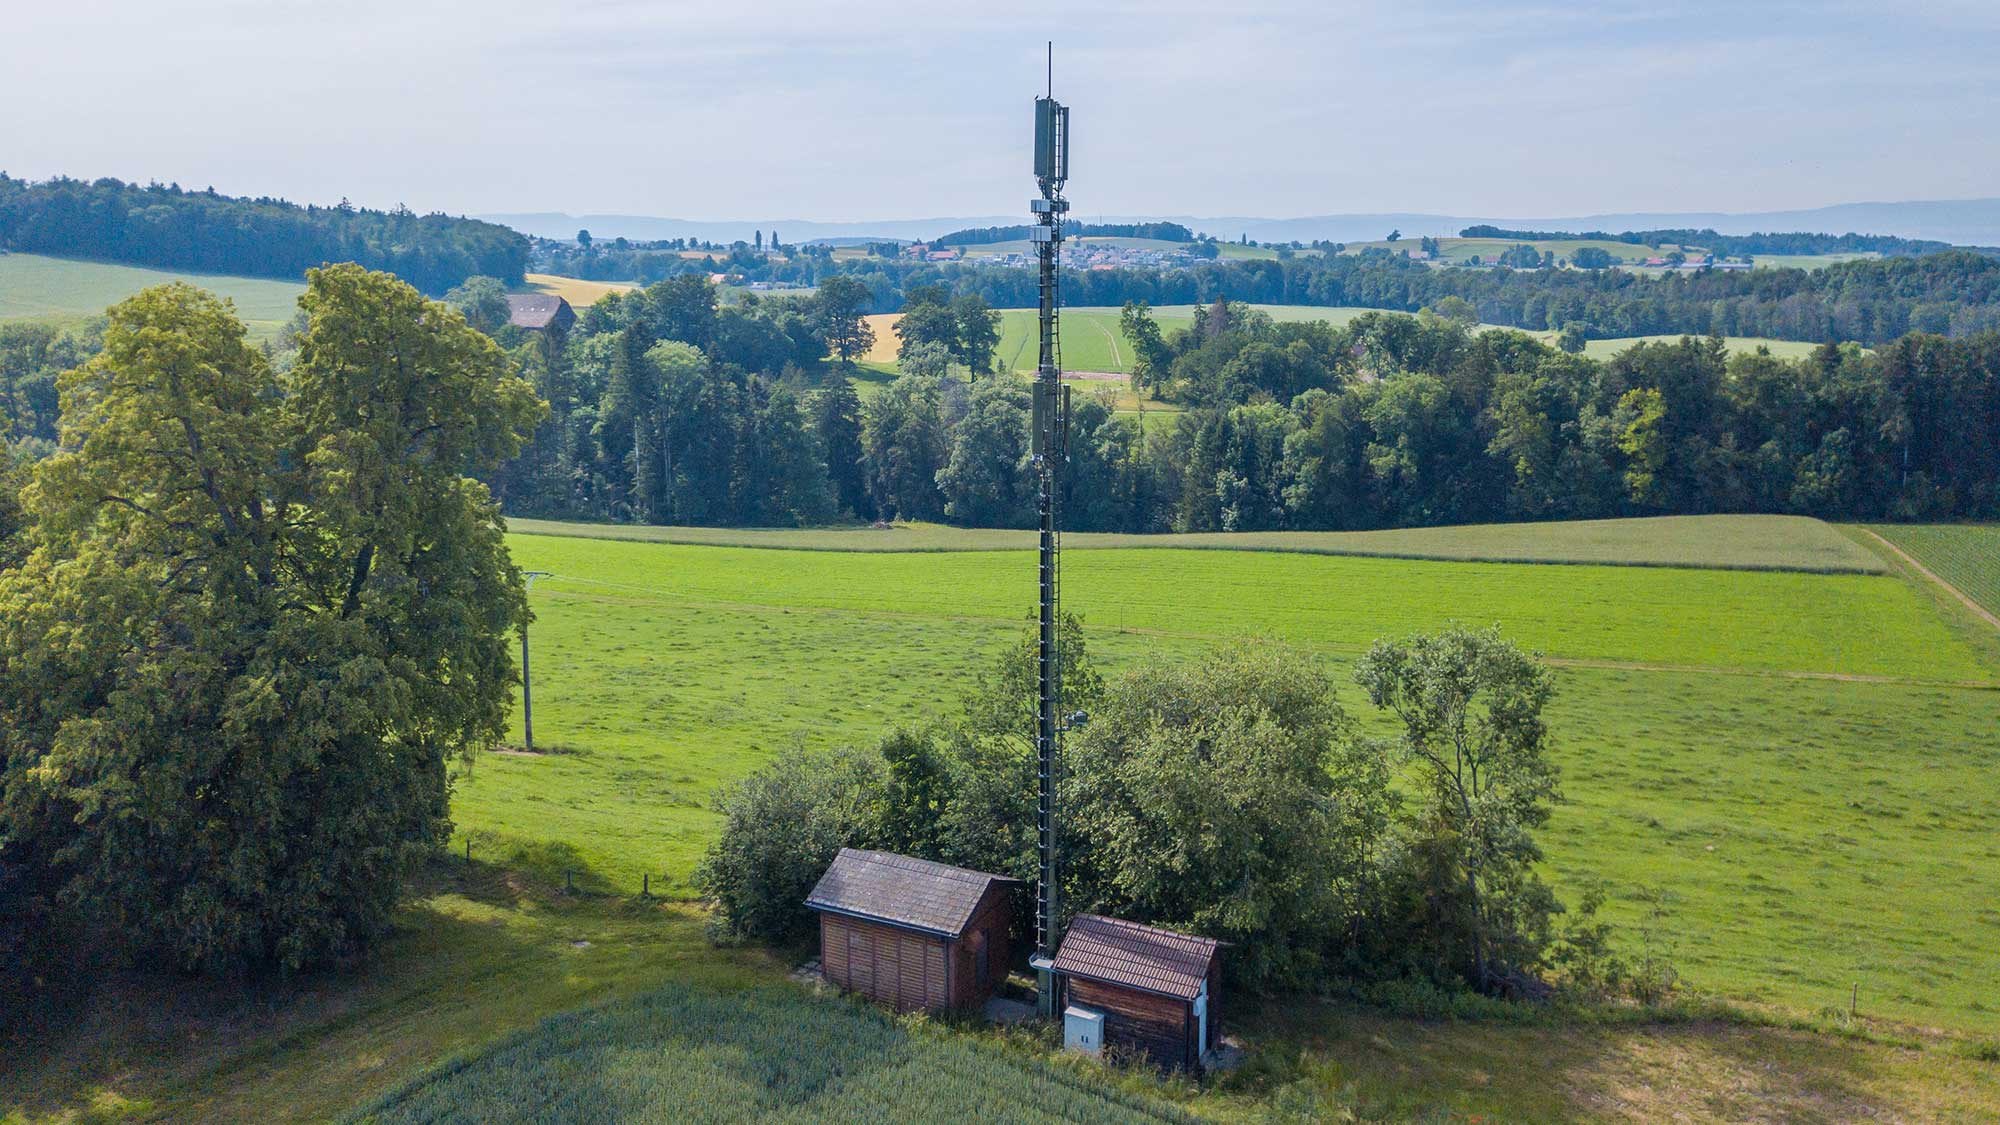 Mobilfunkmast neben zwei Häusern vor grüner Landschaft mit Bäumen. Der 5G-Betrieb gelingt ohne Umweltbelastungen.